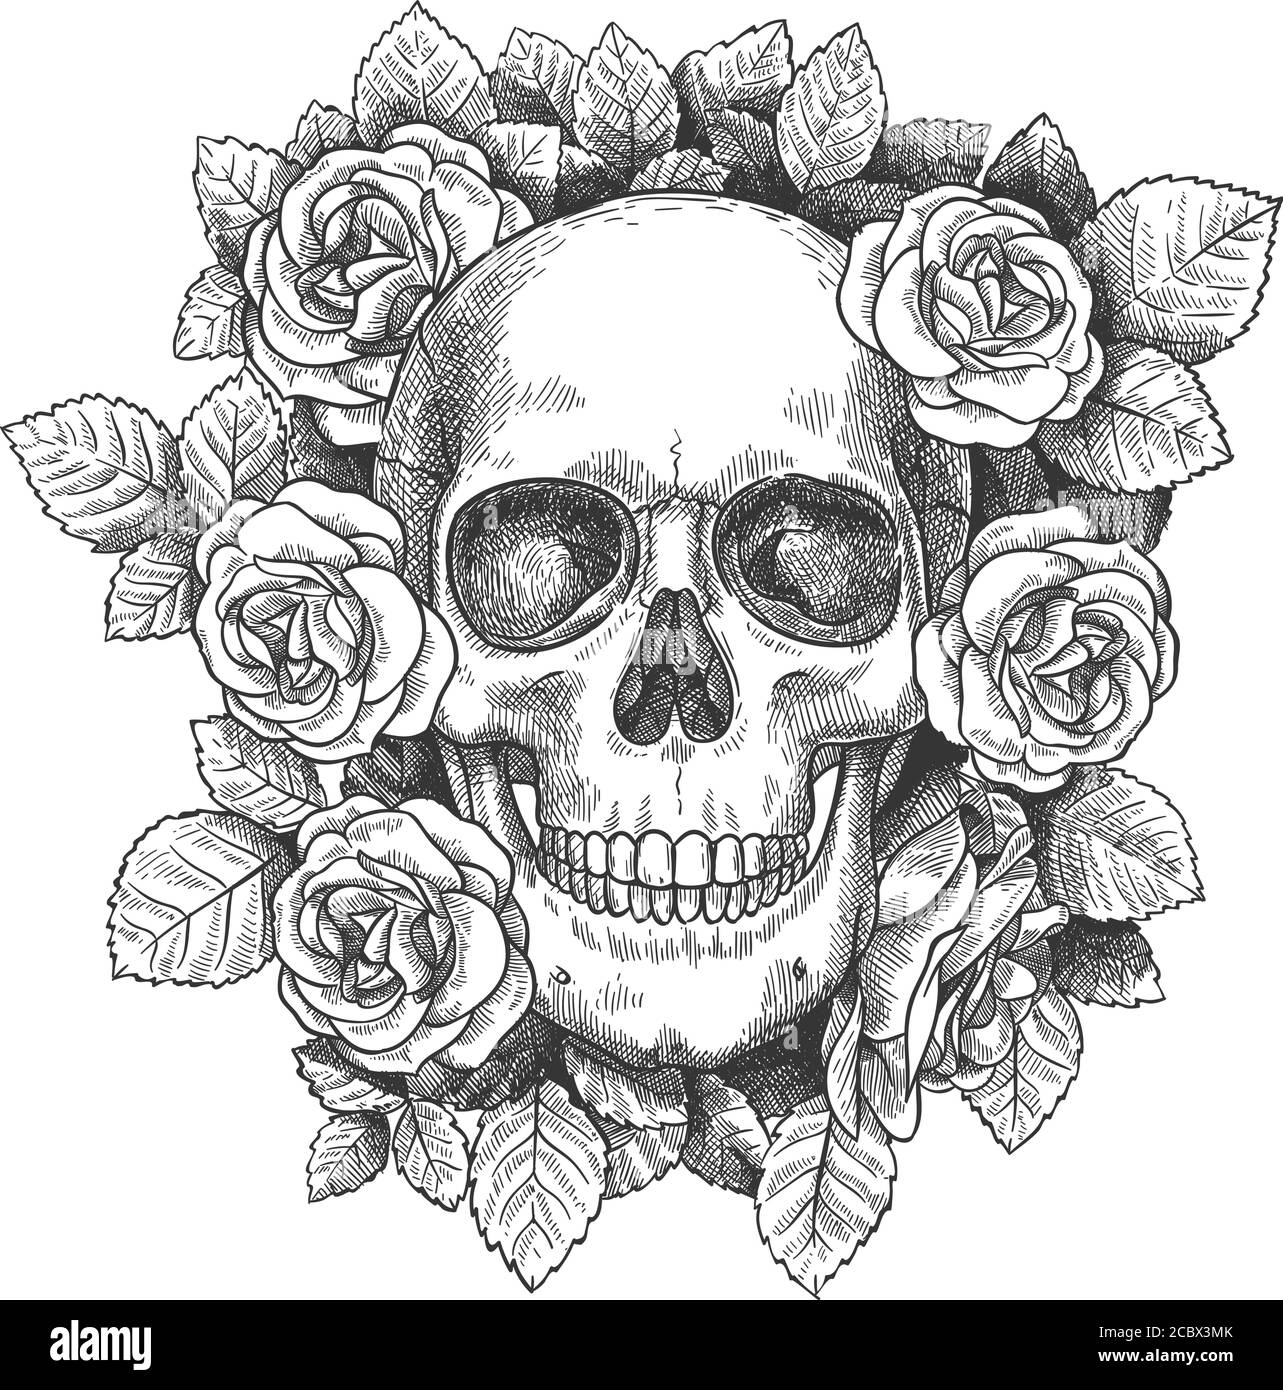 Totenkopf mit Blumen. Sketch menschlichen Schädel mit Rosen, traditionelle Gothic schwarz Tattoo. Gezeichnet Monster halloween Gravur Vektor Kunstwerk Stock Vektor